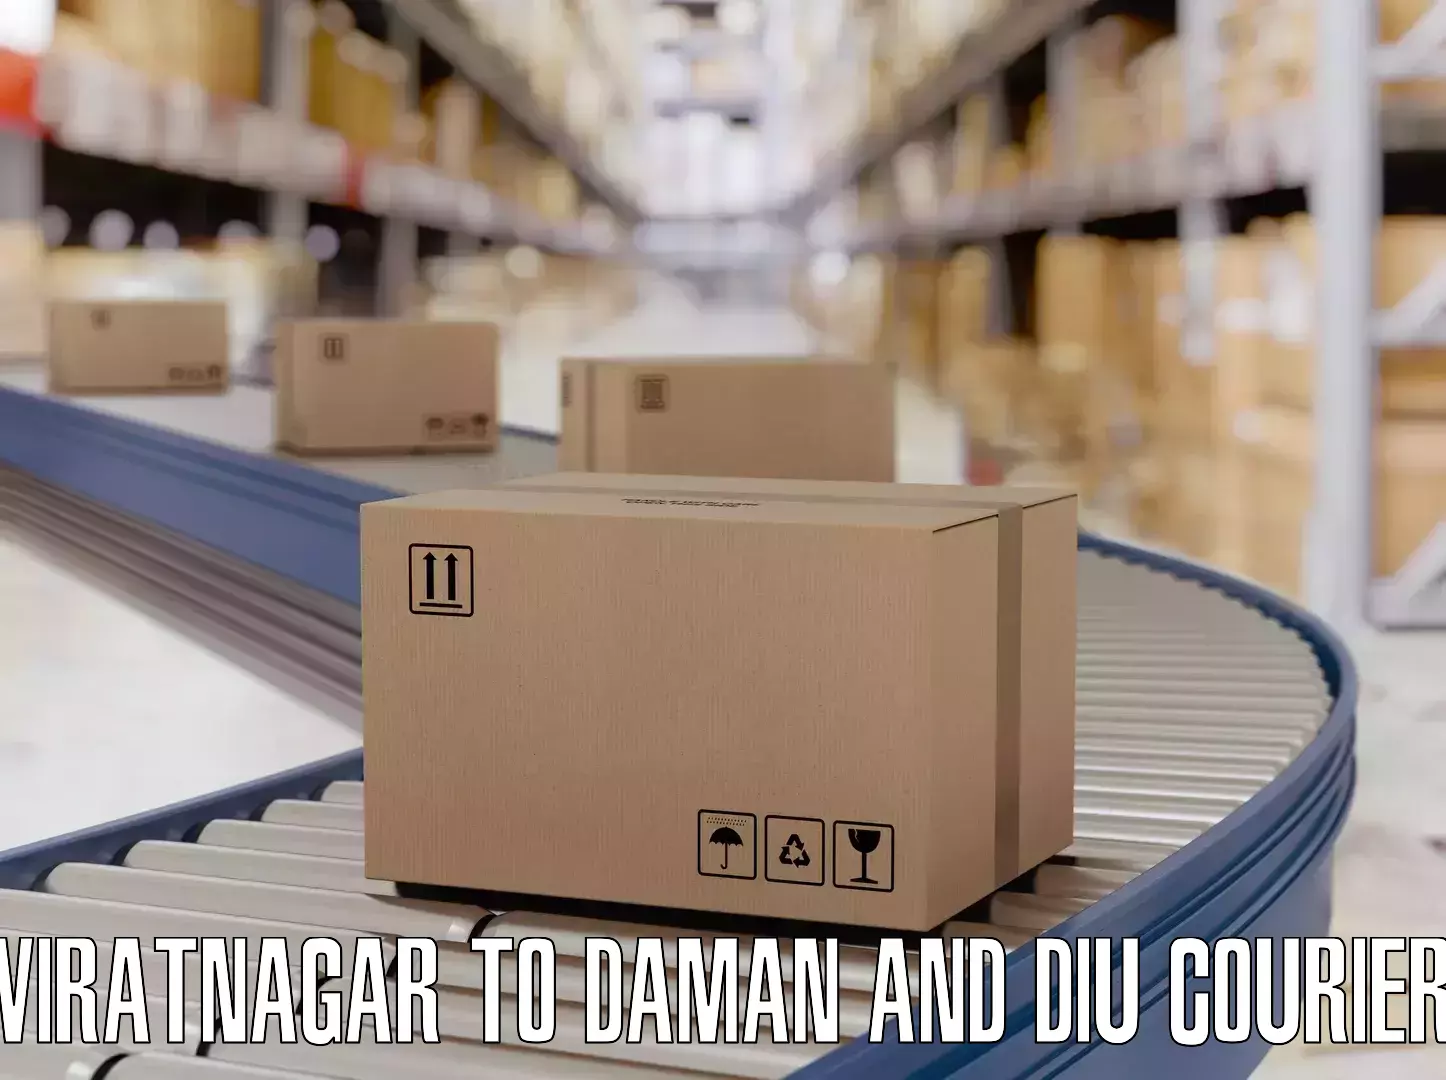 Weekend baggage shipping Viratnagar to Daman